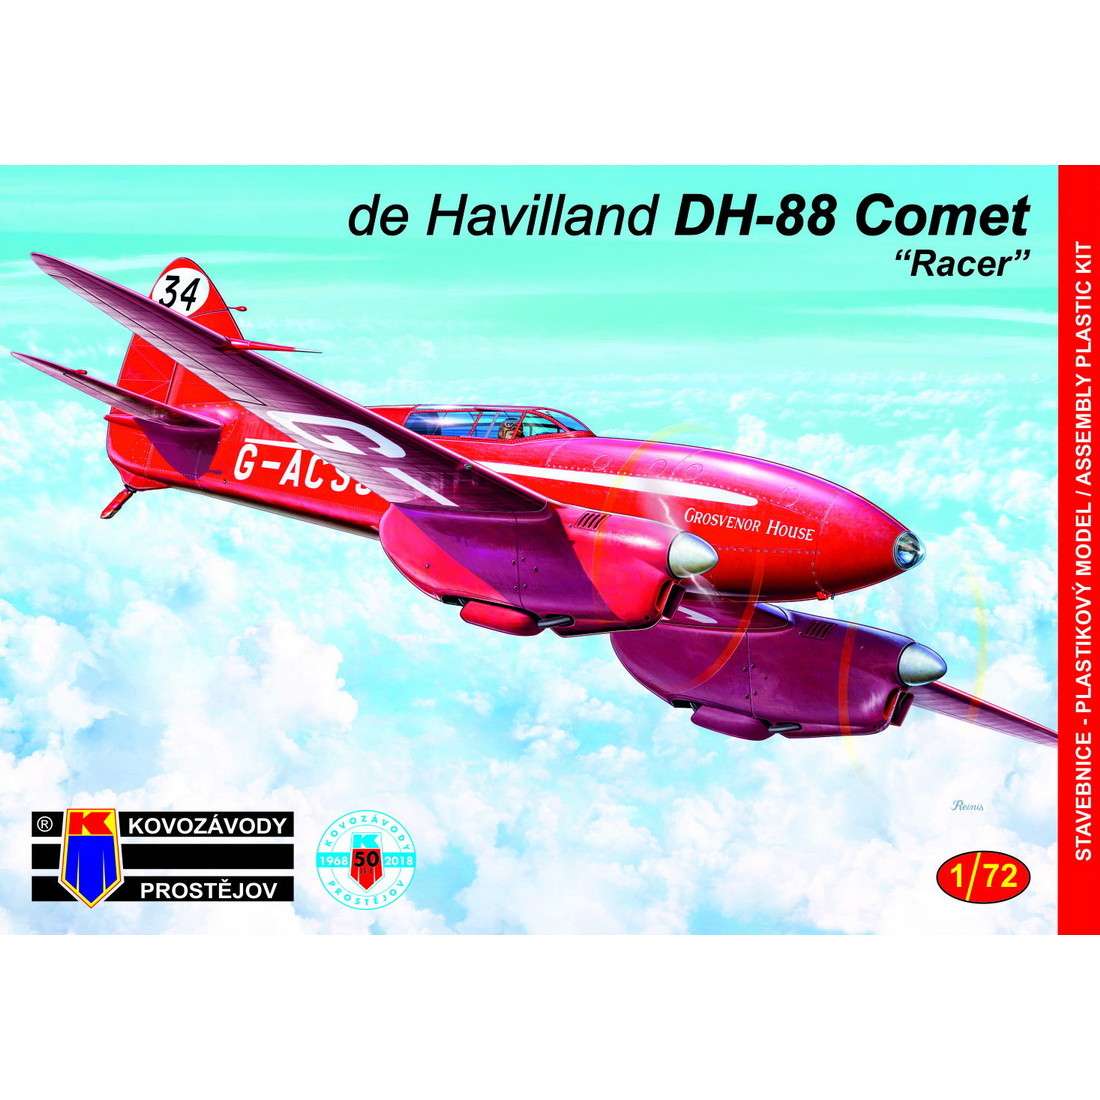 【新製品】KPM0099 デ・ハビランド DH.88 コメット マックロバートソン・エアレース